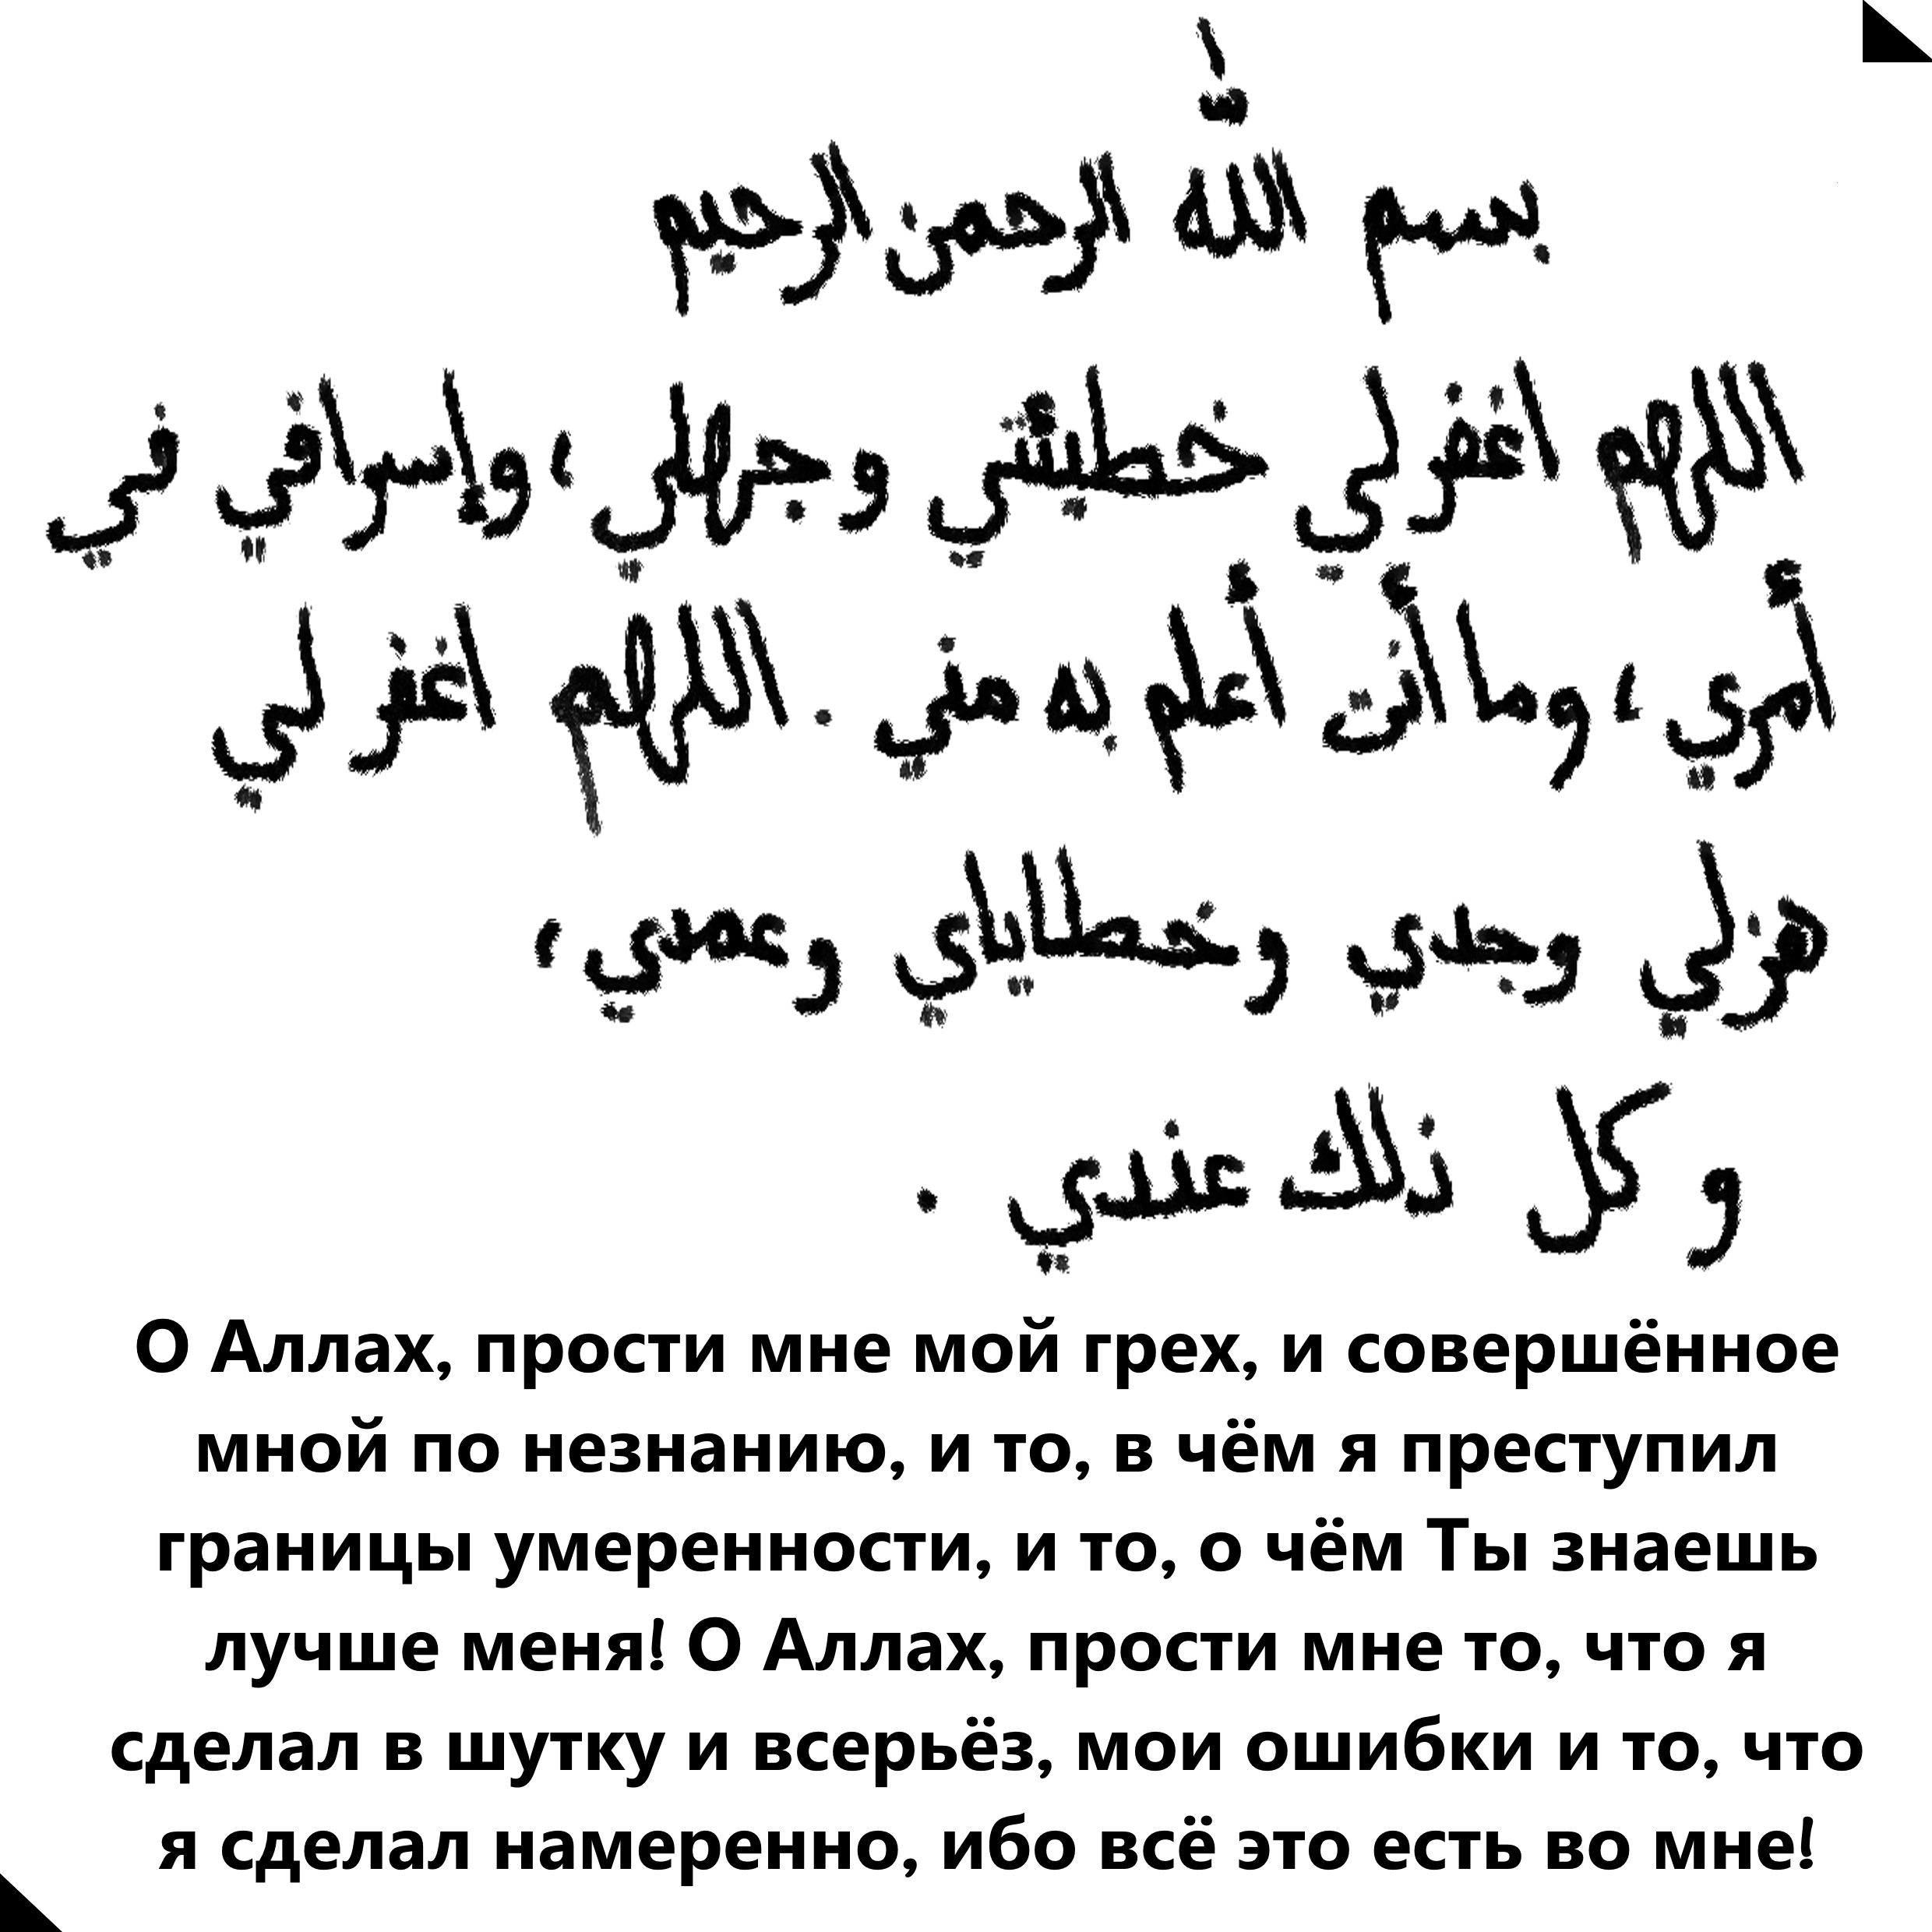 Молитва на арабском. Мусульманские молитвы на арабском языке. Молитва Аллаху. Мусульманские молитвы на русском.